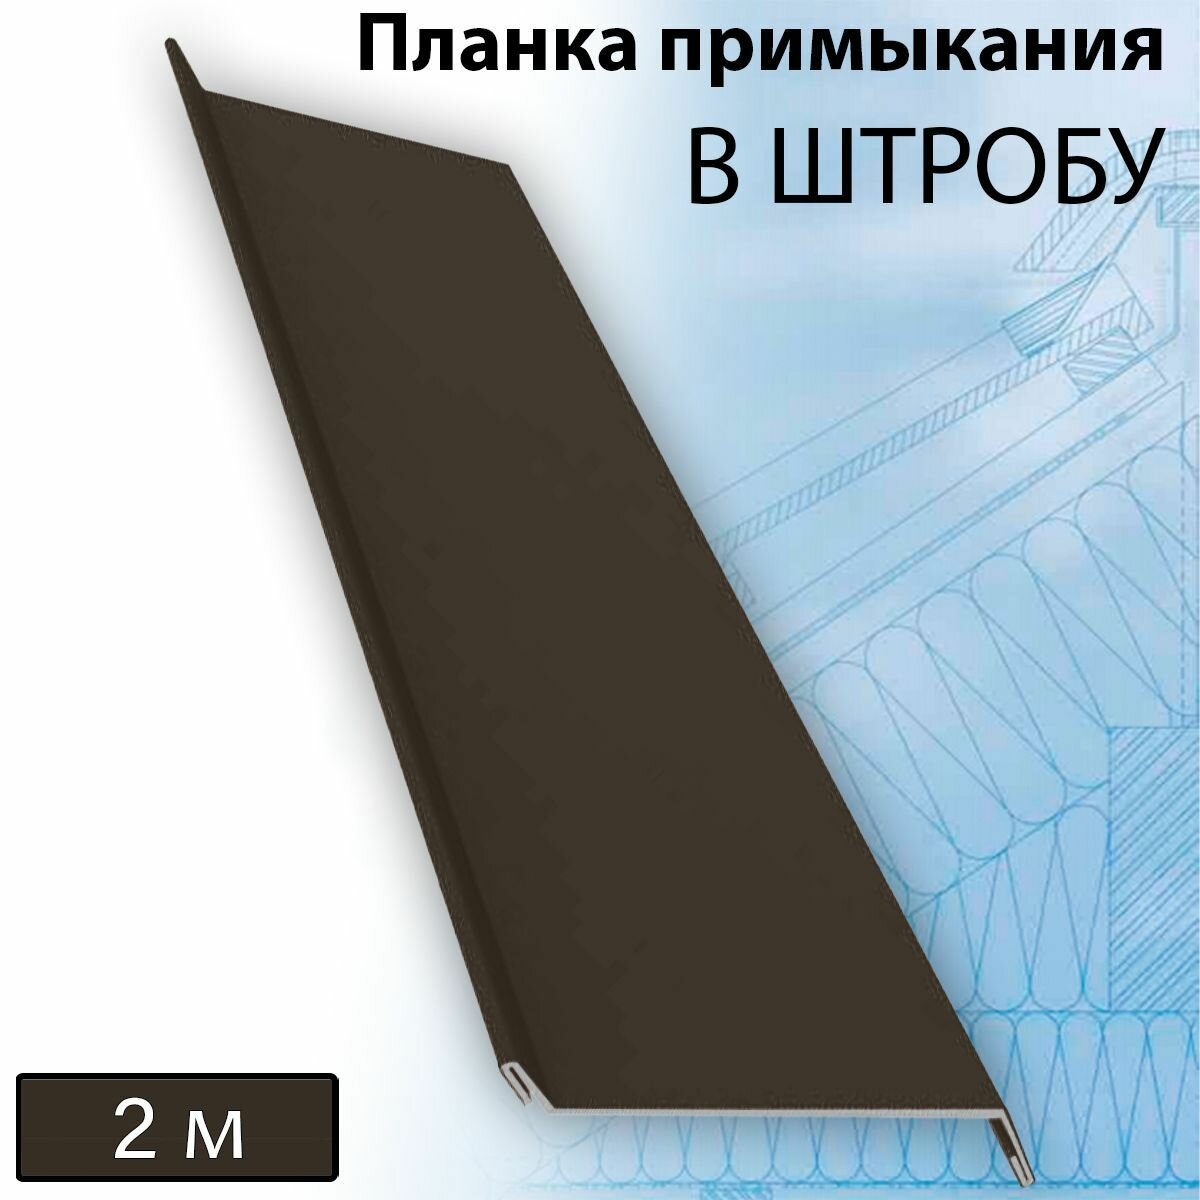 Планка примыкания в штробу 60 мм, 10 штук (RR 32) 2 м темно-коричневый - фотография № 1